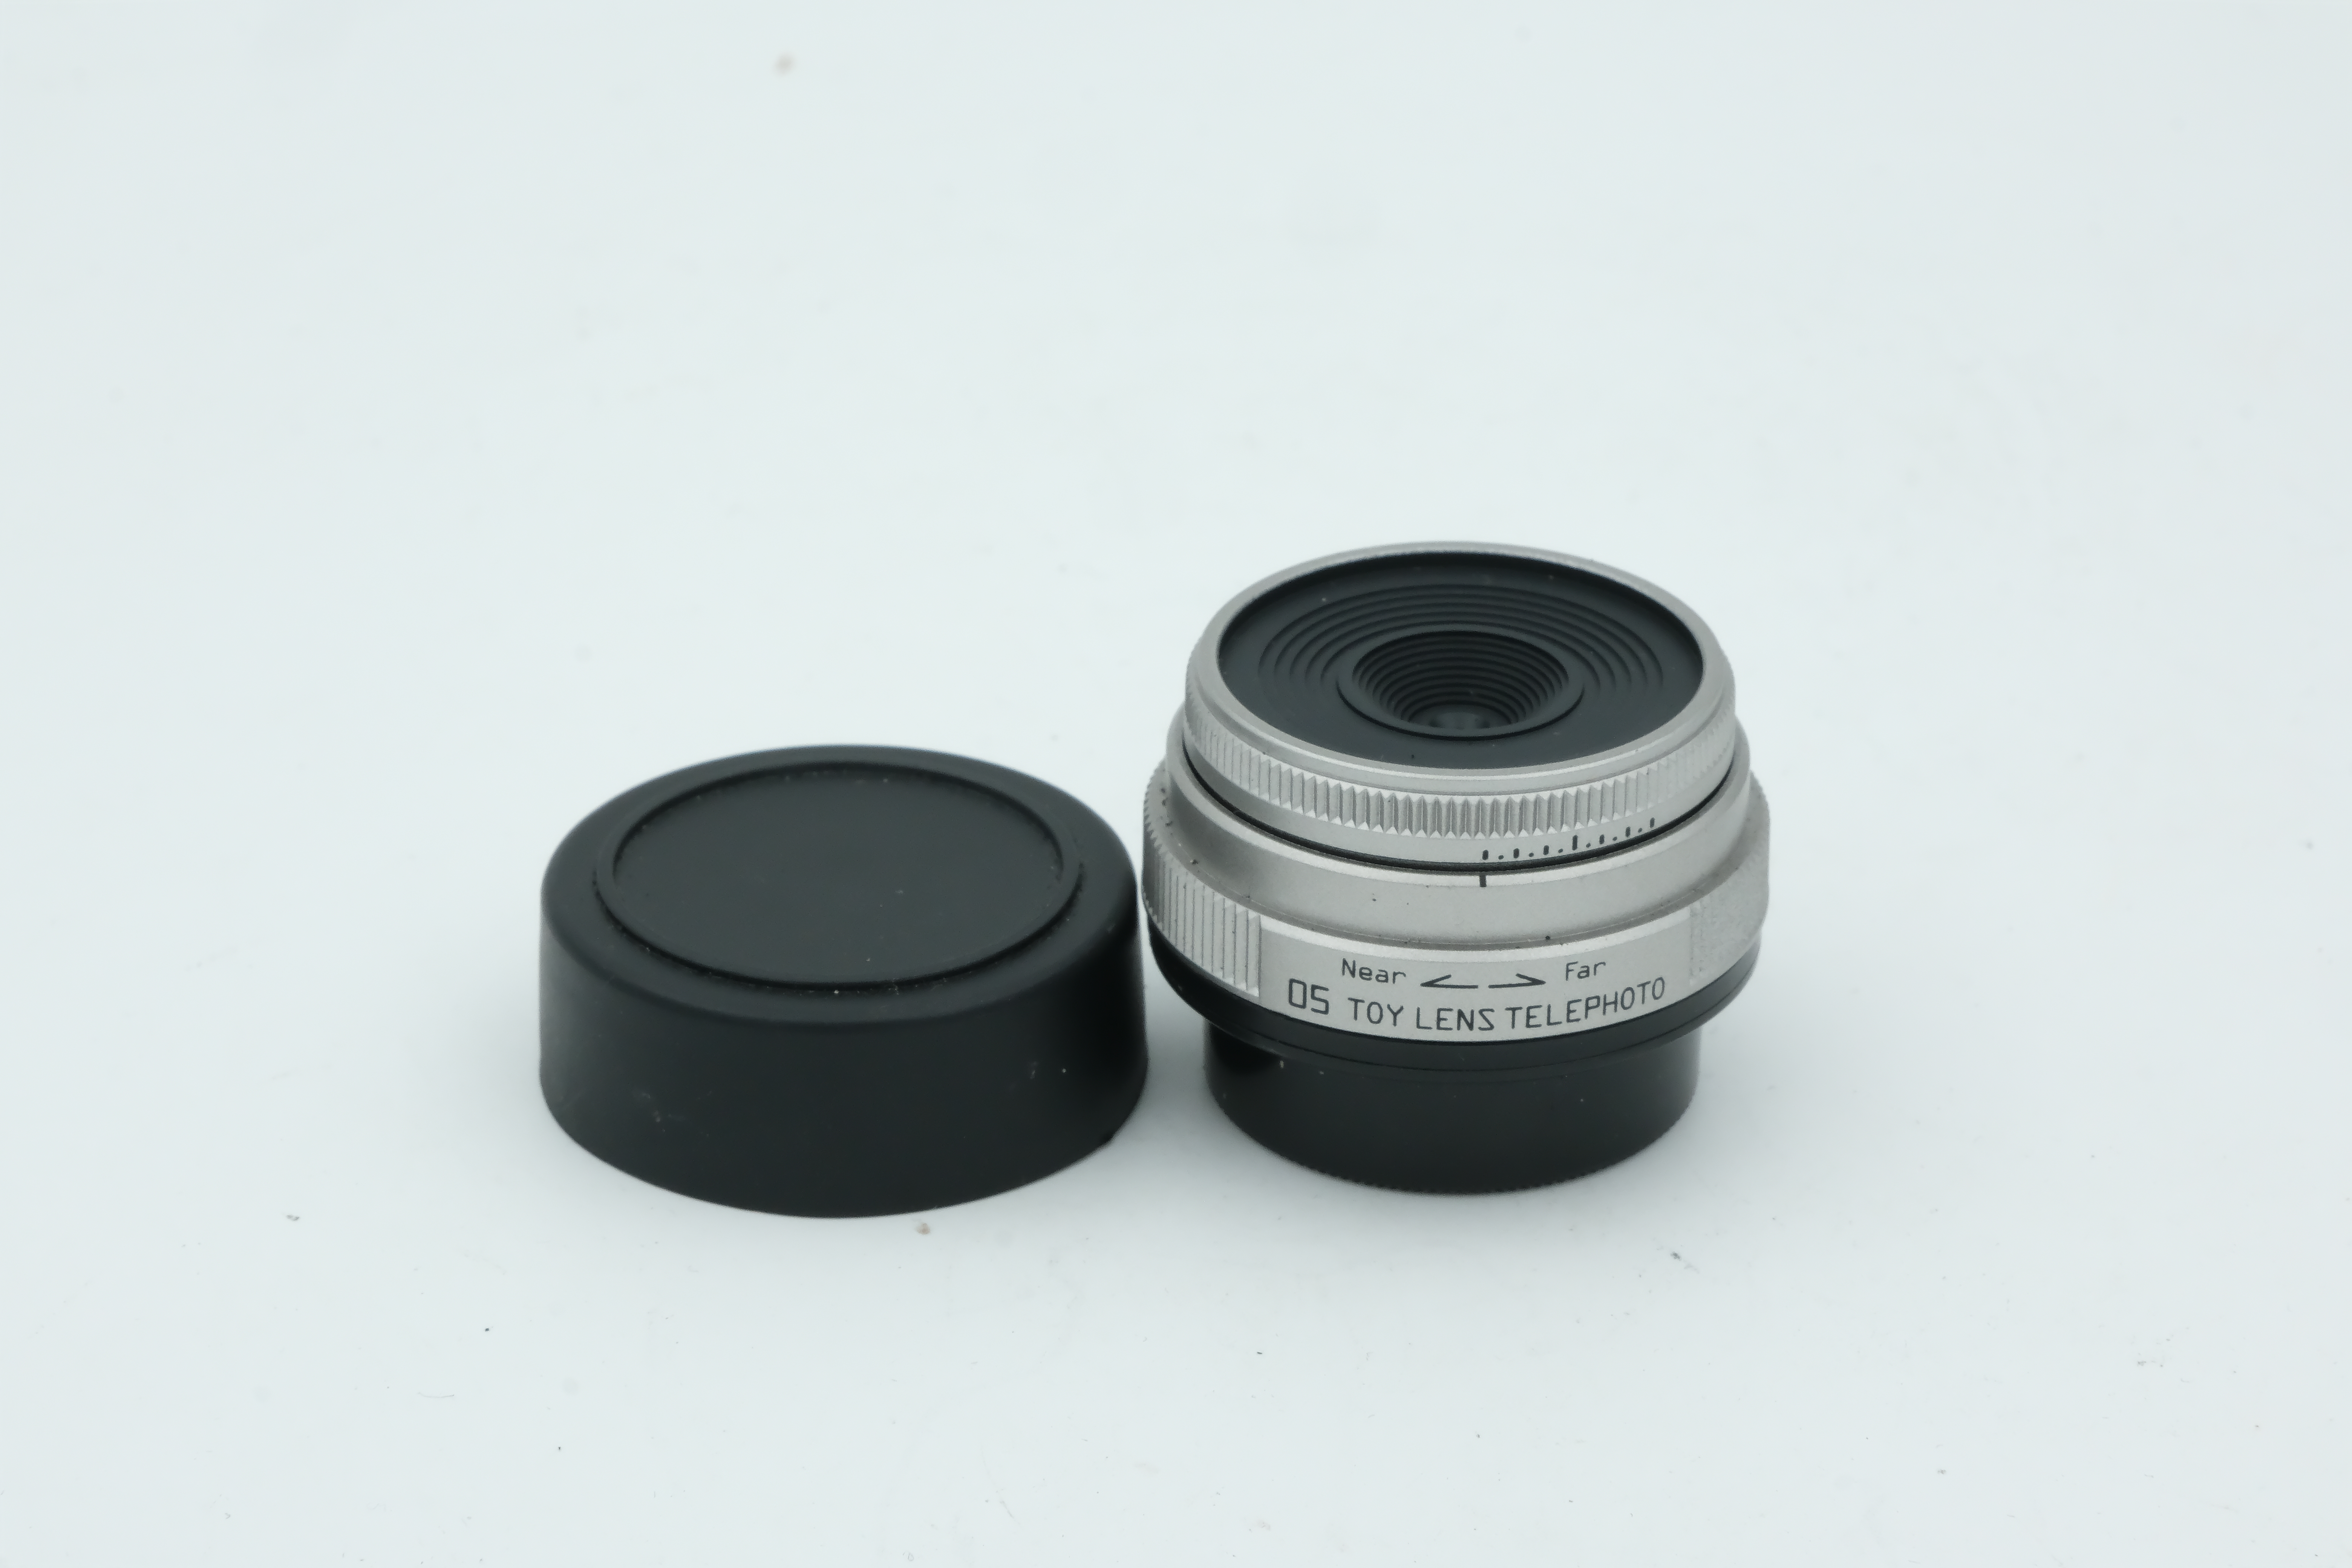 Pentax 05 Toy Lens Telephoto 18mm 8,0 für Pentax Q